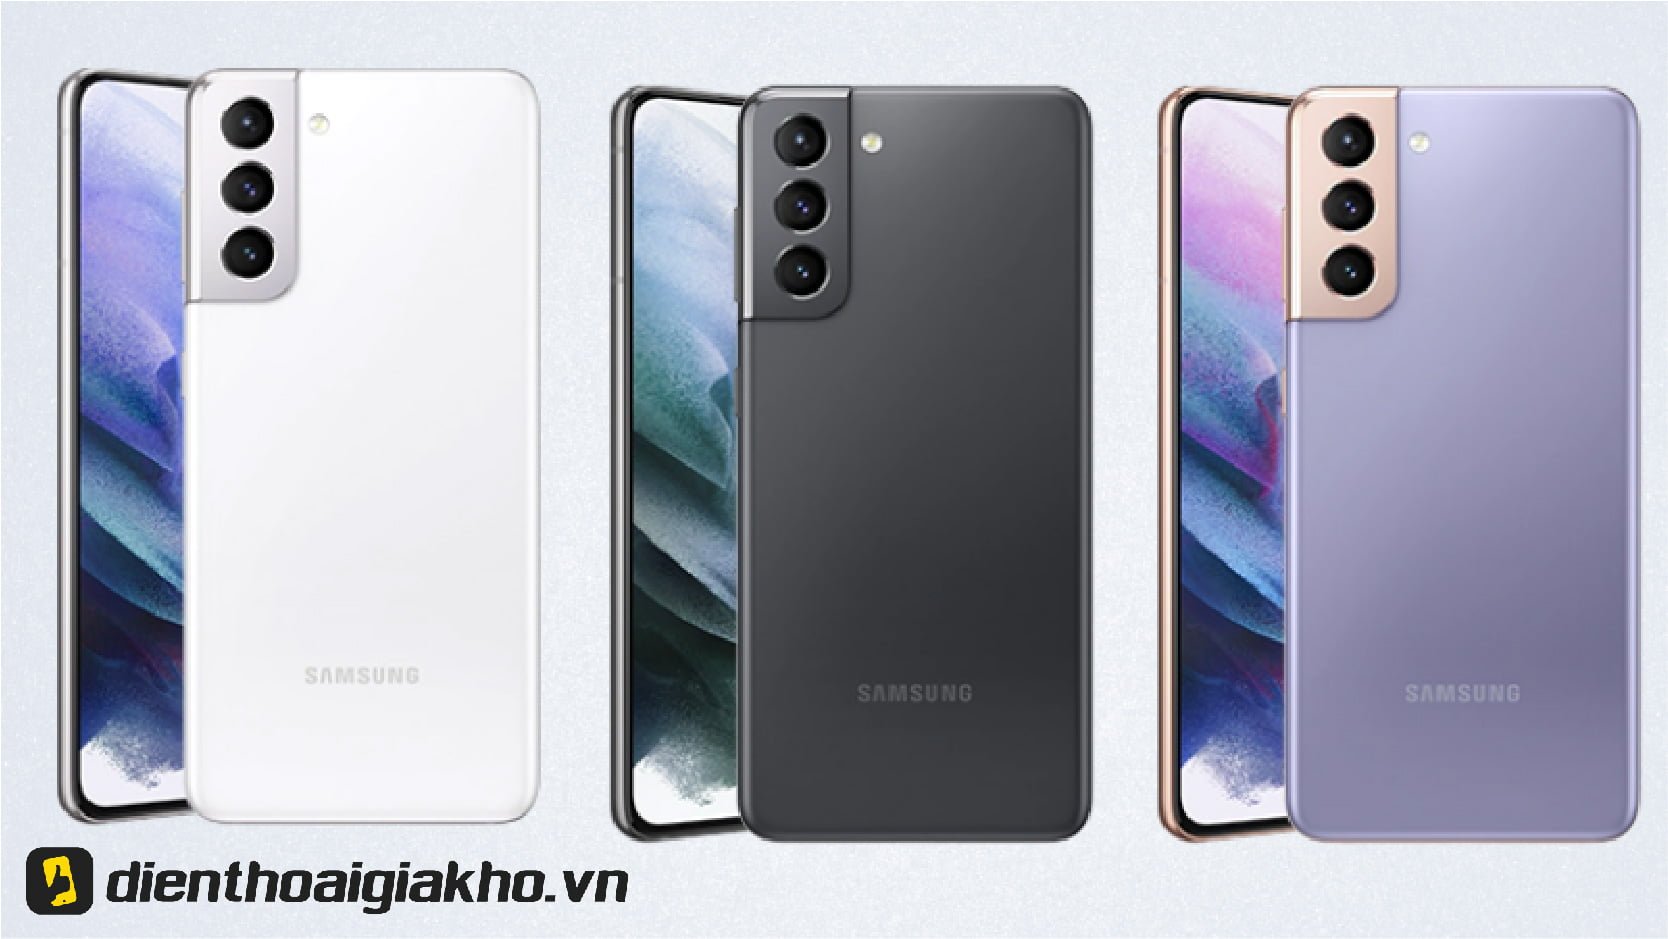 Bộ 3 màu sắc Samsung Galaxy S21 5G